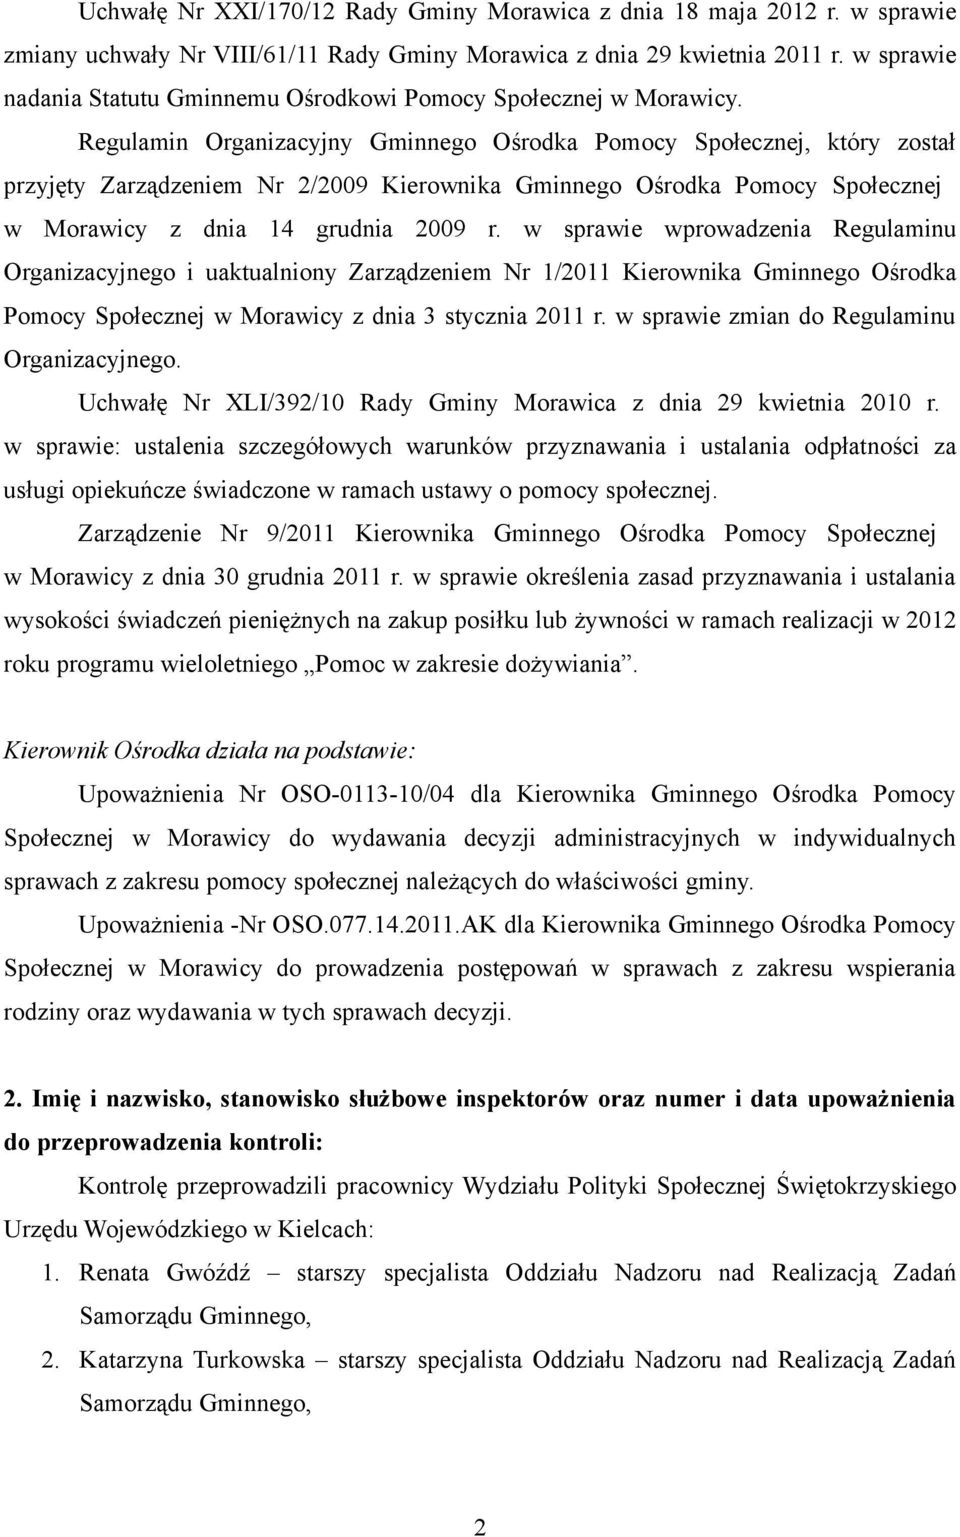 Regulamin Organizacyjny Gminnego Ośrodka Pomocy Społecznej, który został przyjęty Zarządzeniem Nr 2/2009 Kierownika Gminnego Ośrodka Pomocy Społecznej w Morawicy z dnia 14 grudnia 2009 r.